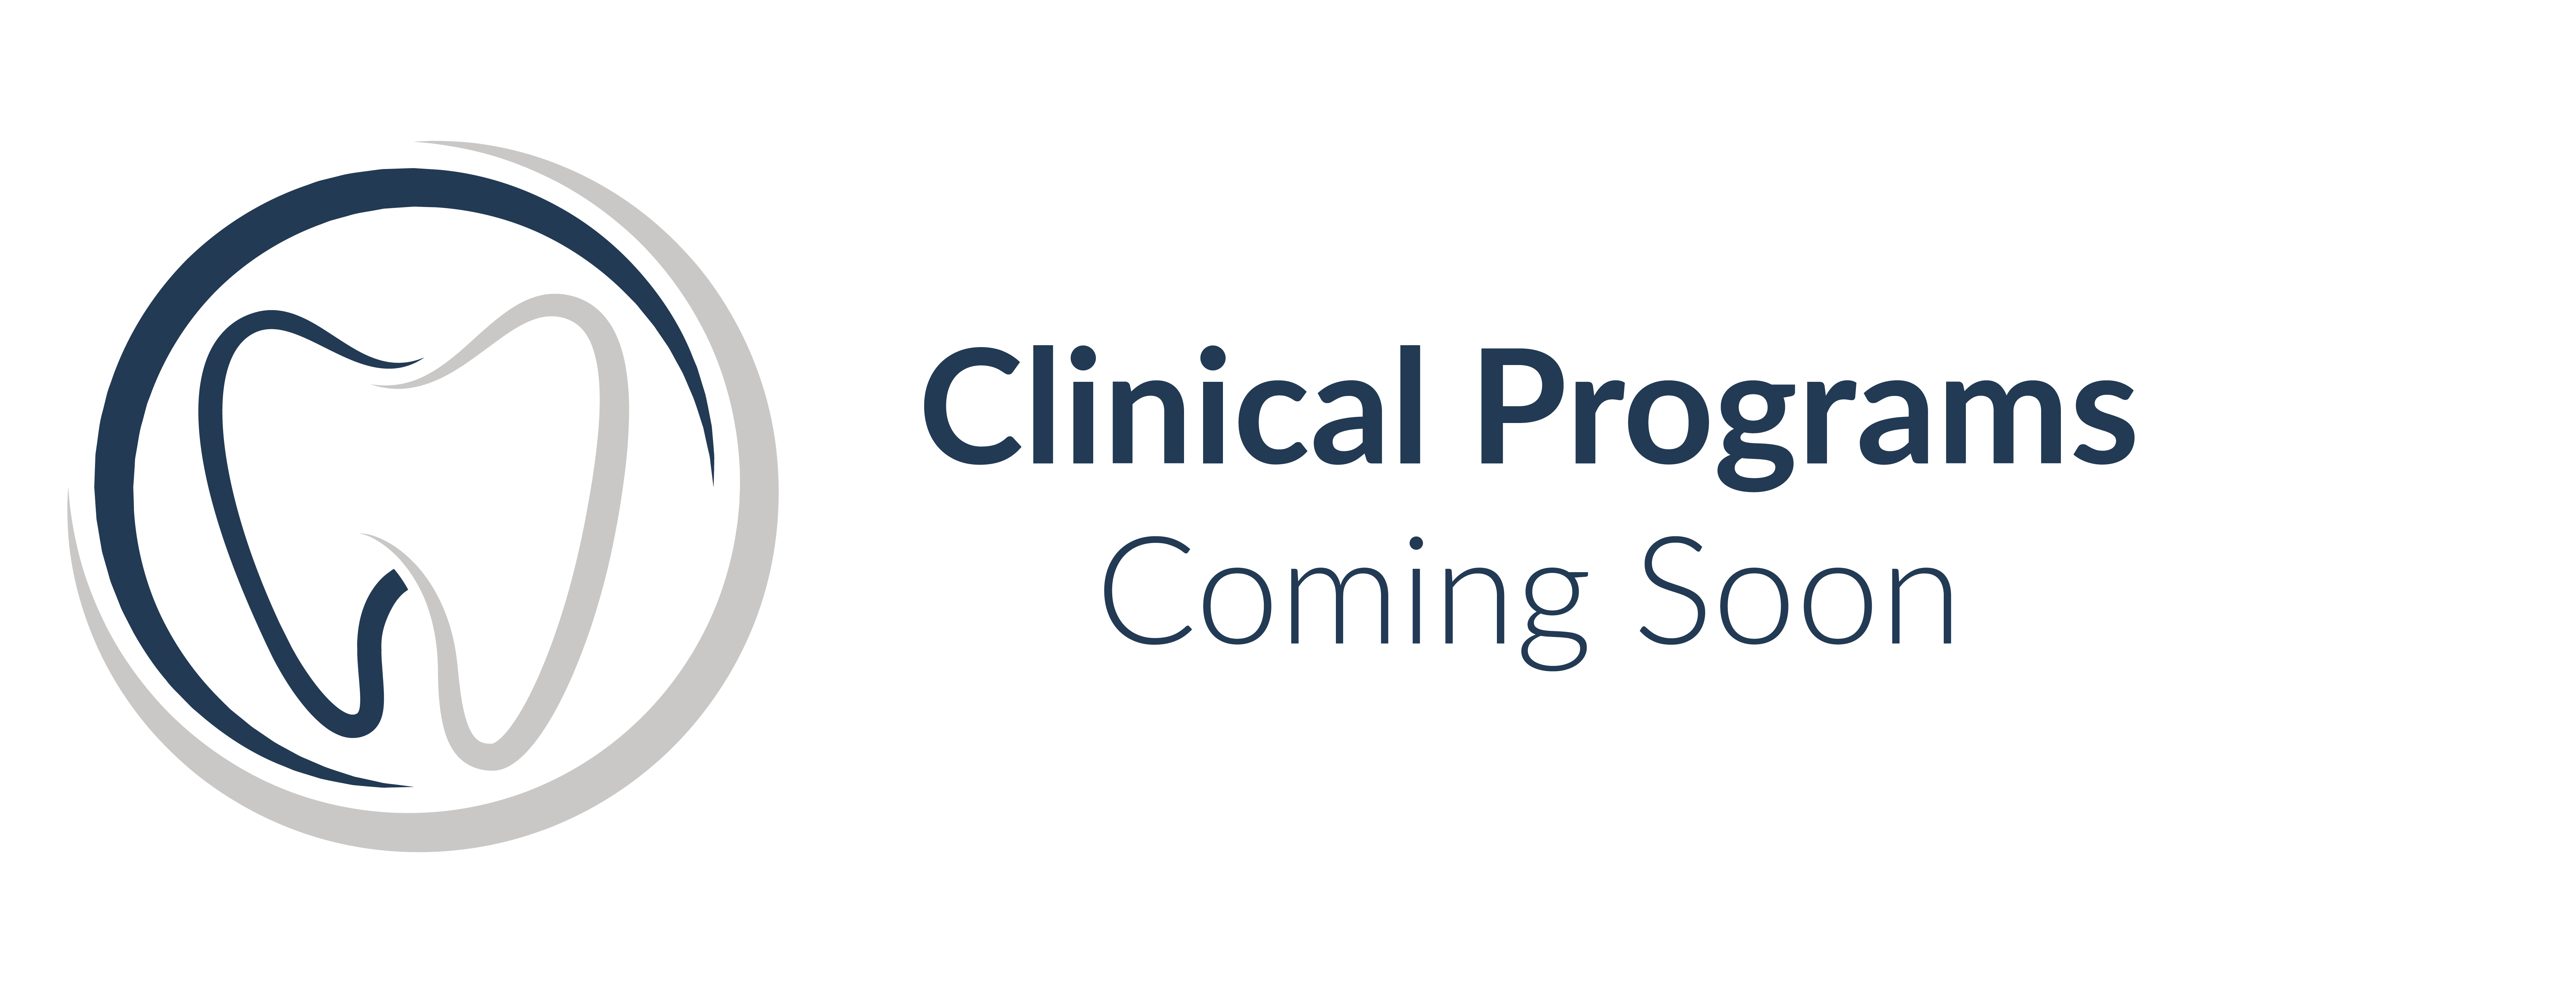 CMS Clinical Programs